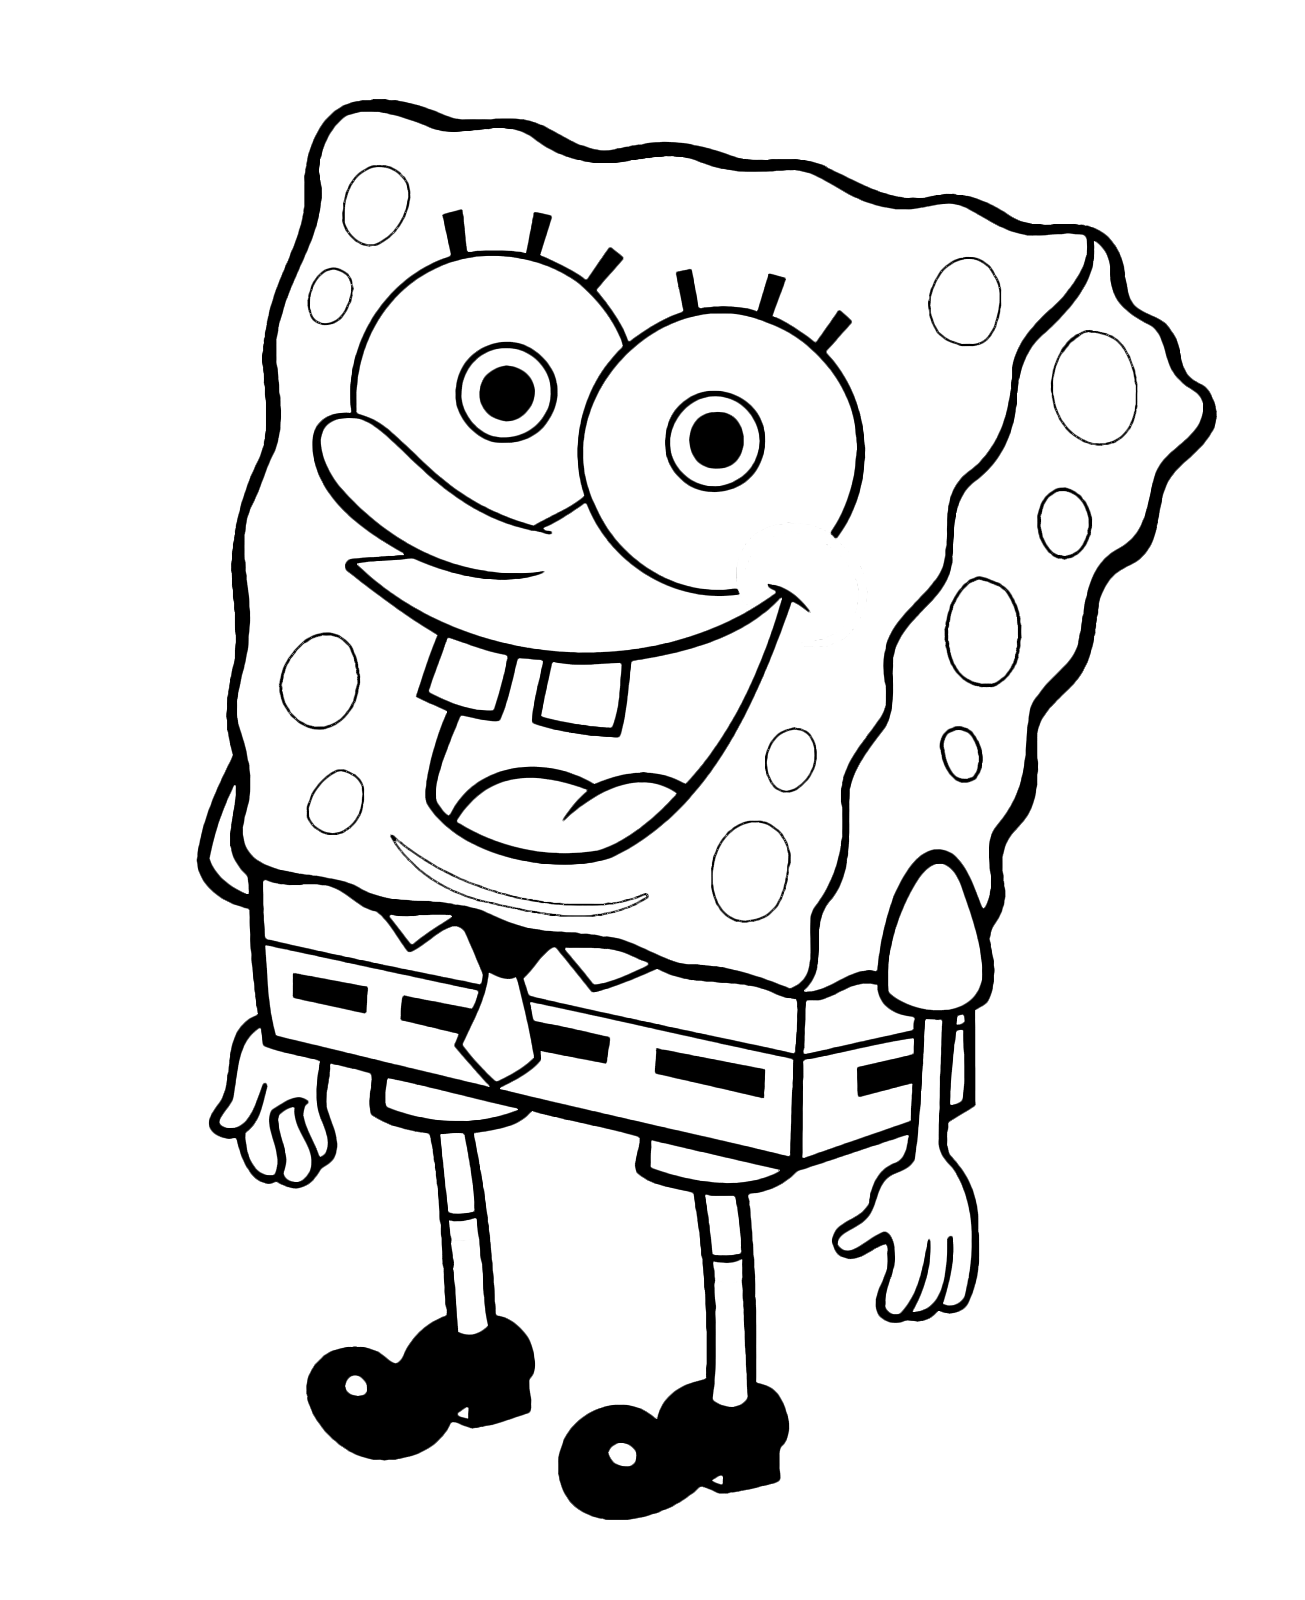 SpongeBob - SpongeBob smiles